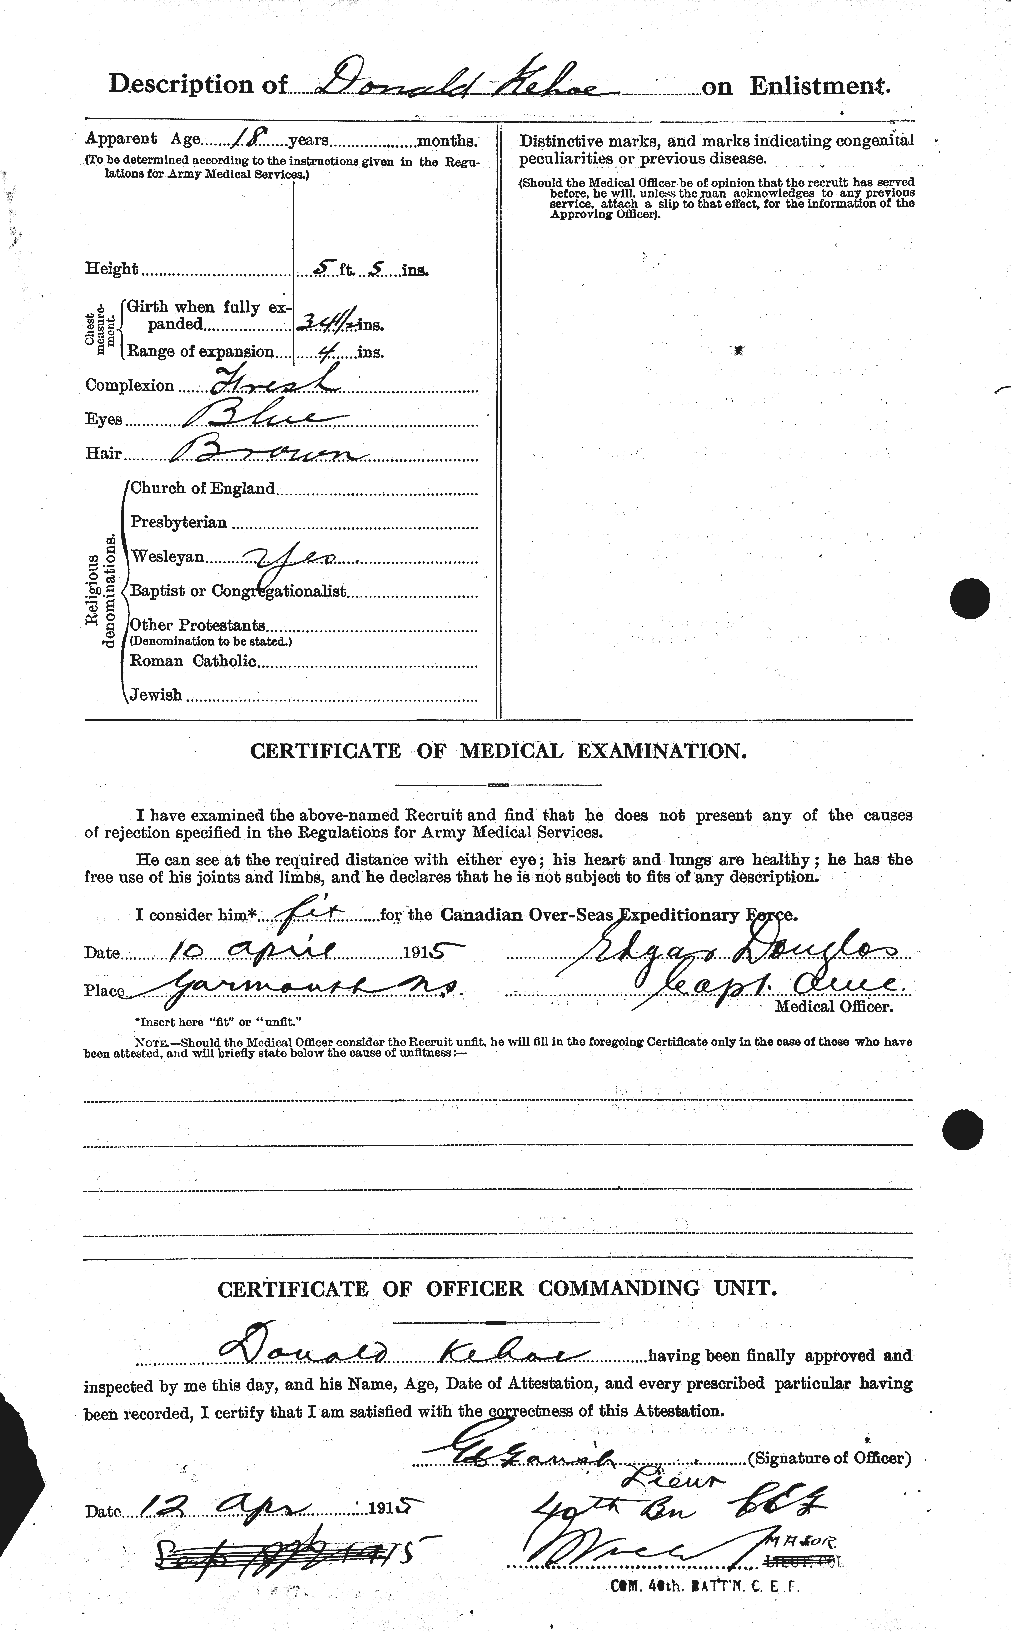 Dossiers du Personnel de la Première Guerre mondiale - CEC 430367b